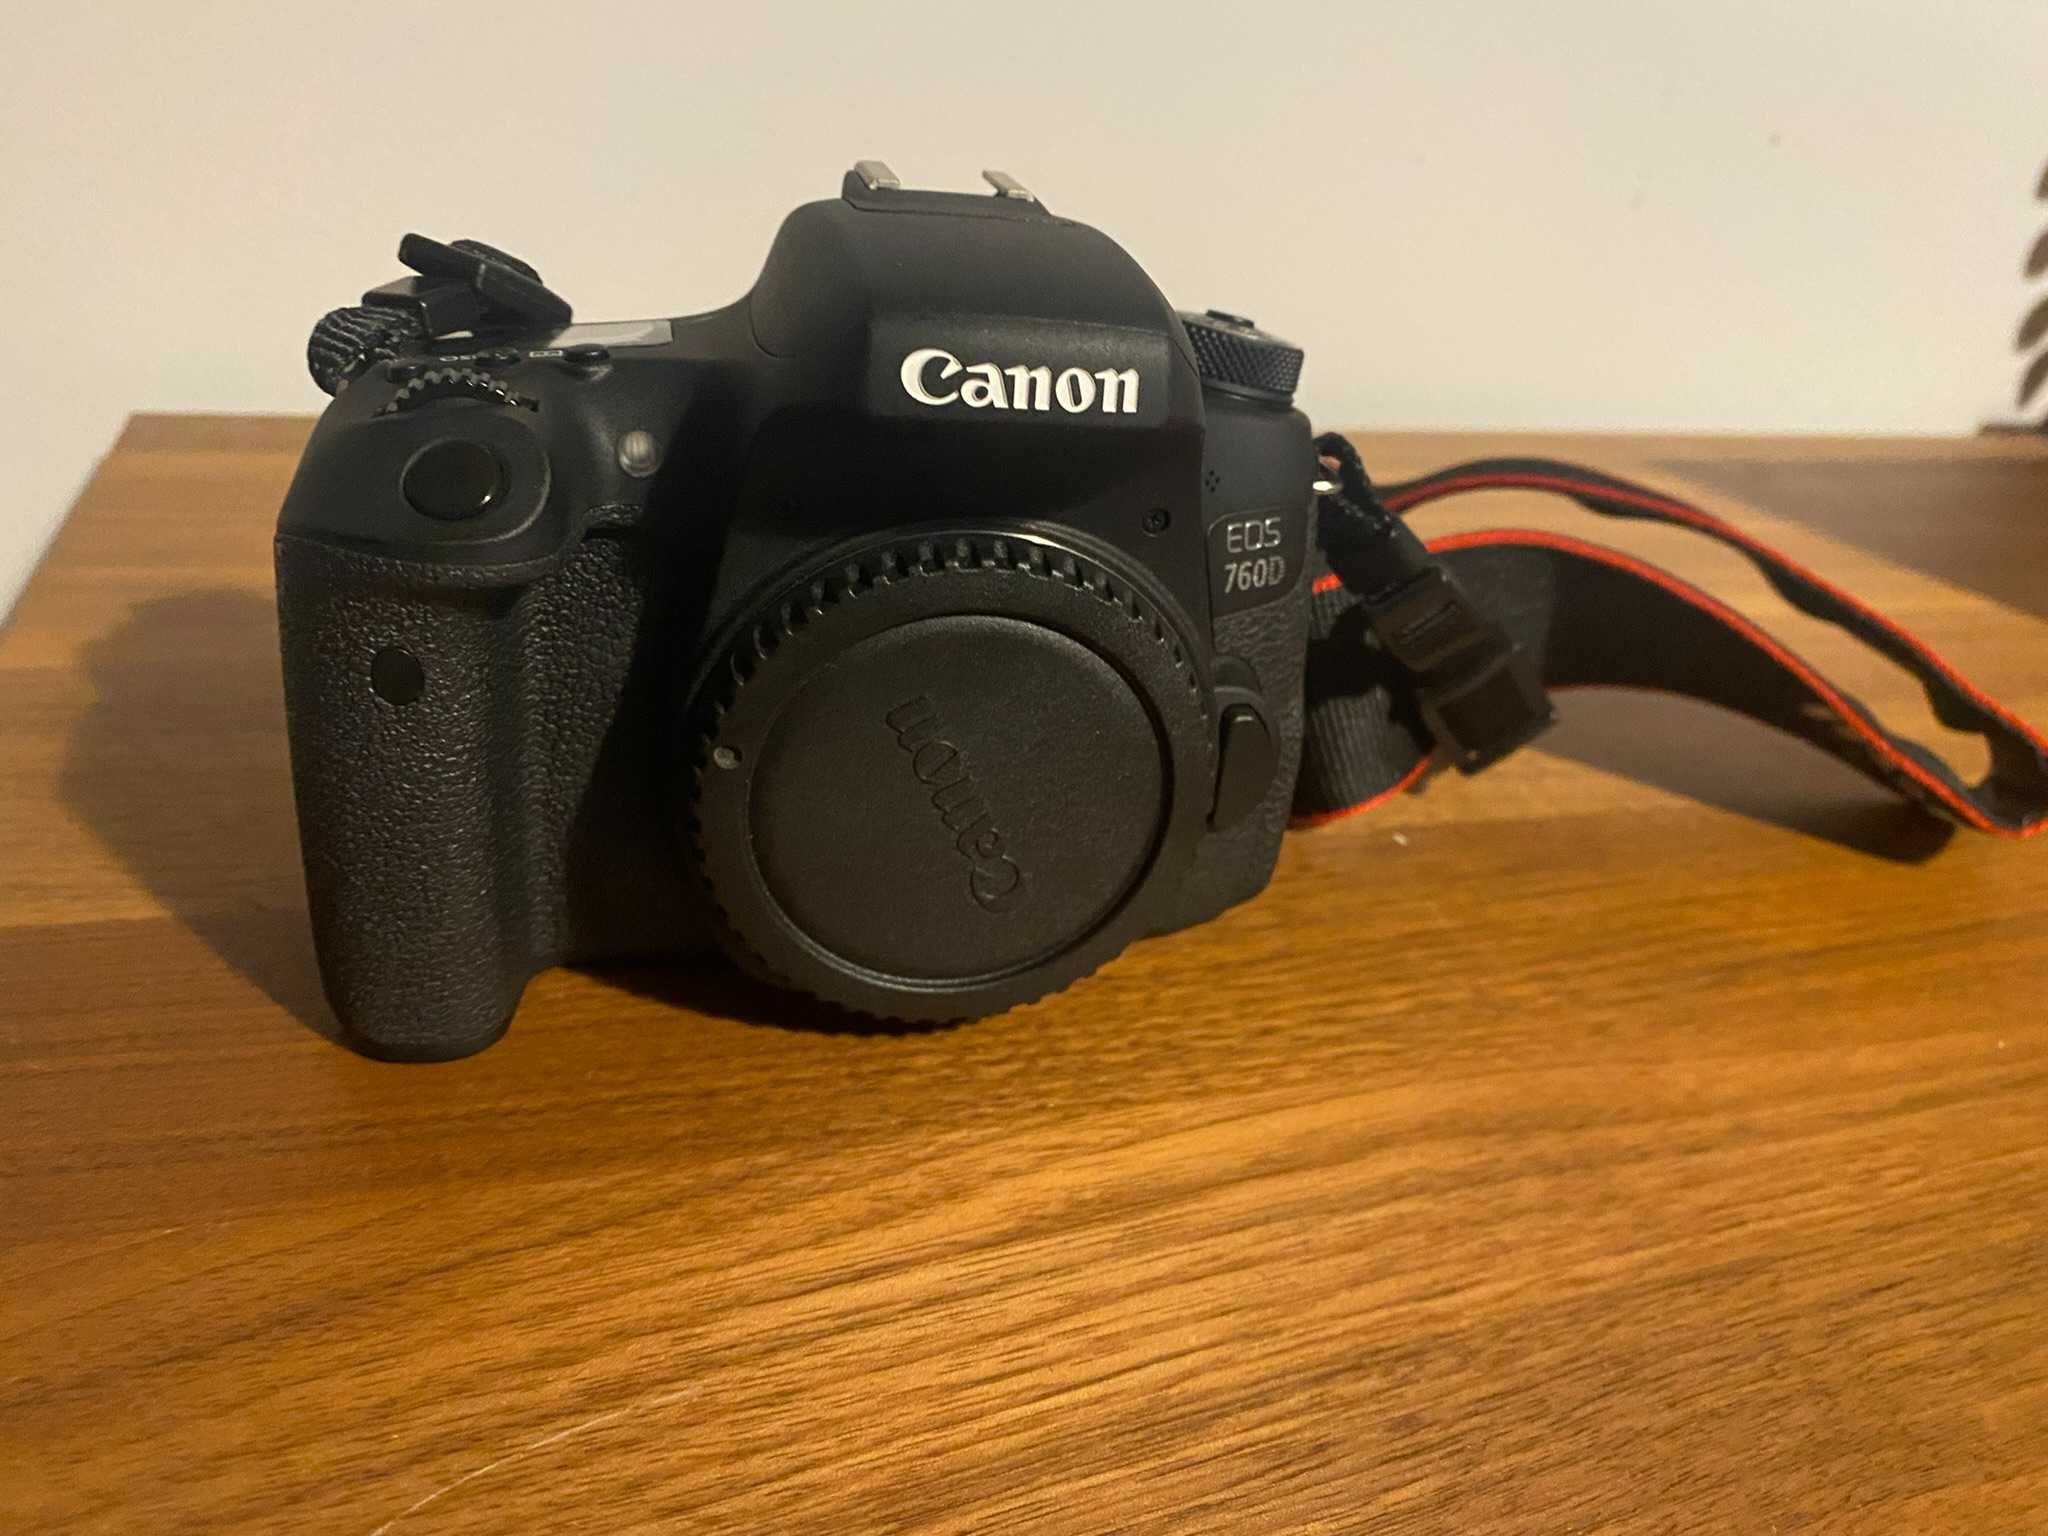 Canon 760d + Objectiva EFS 18-200mm + Acessórios